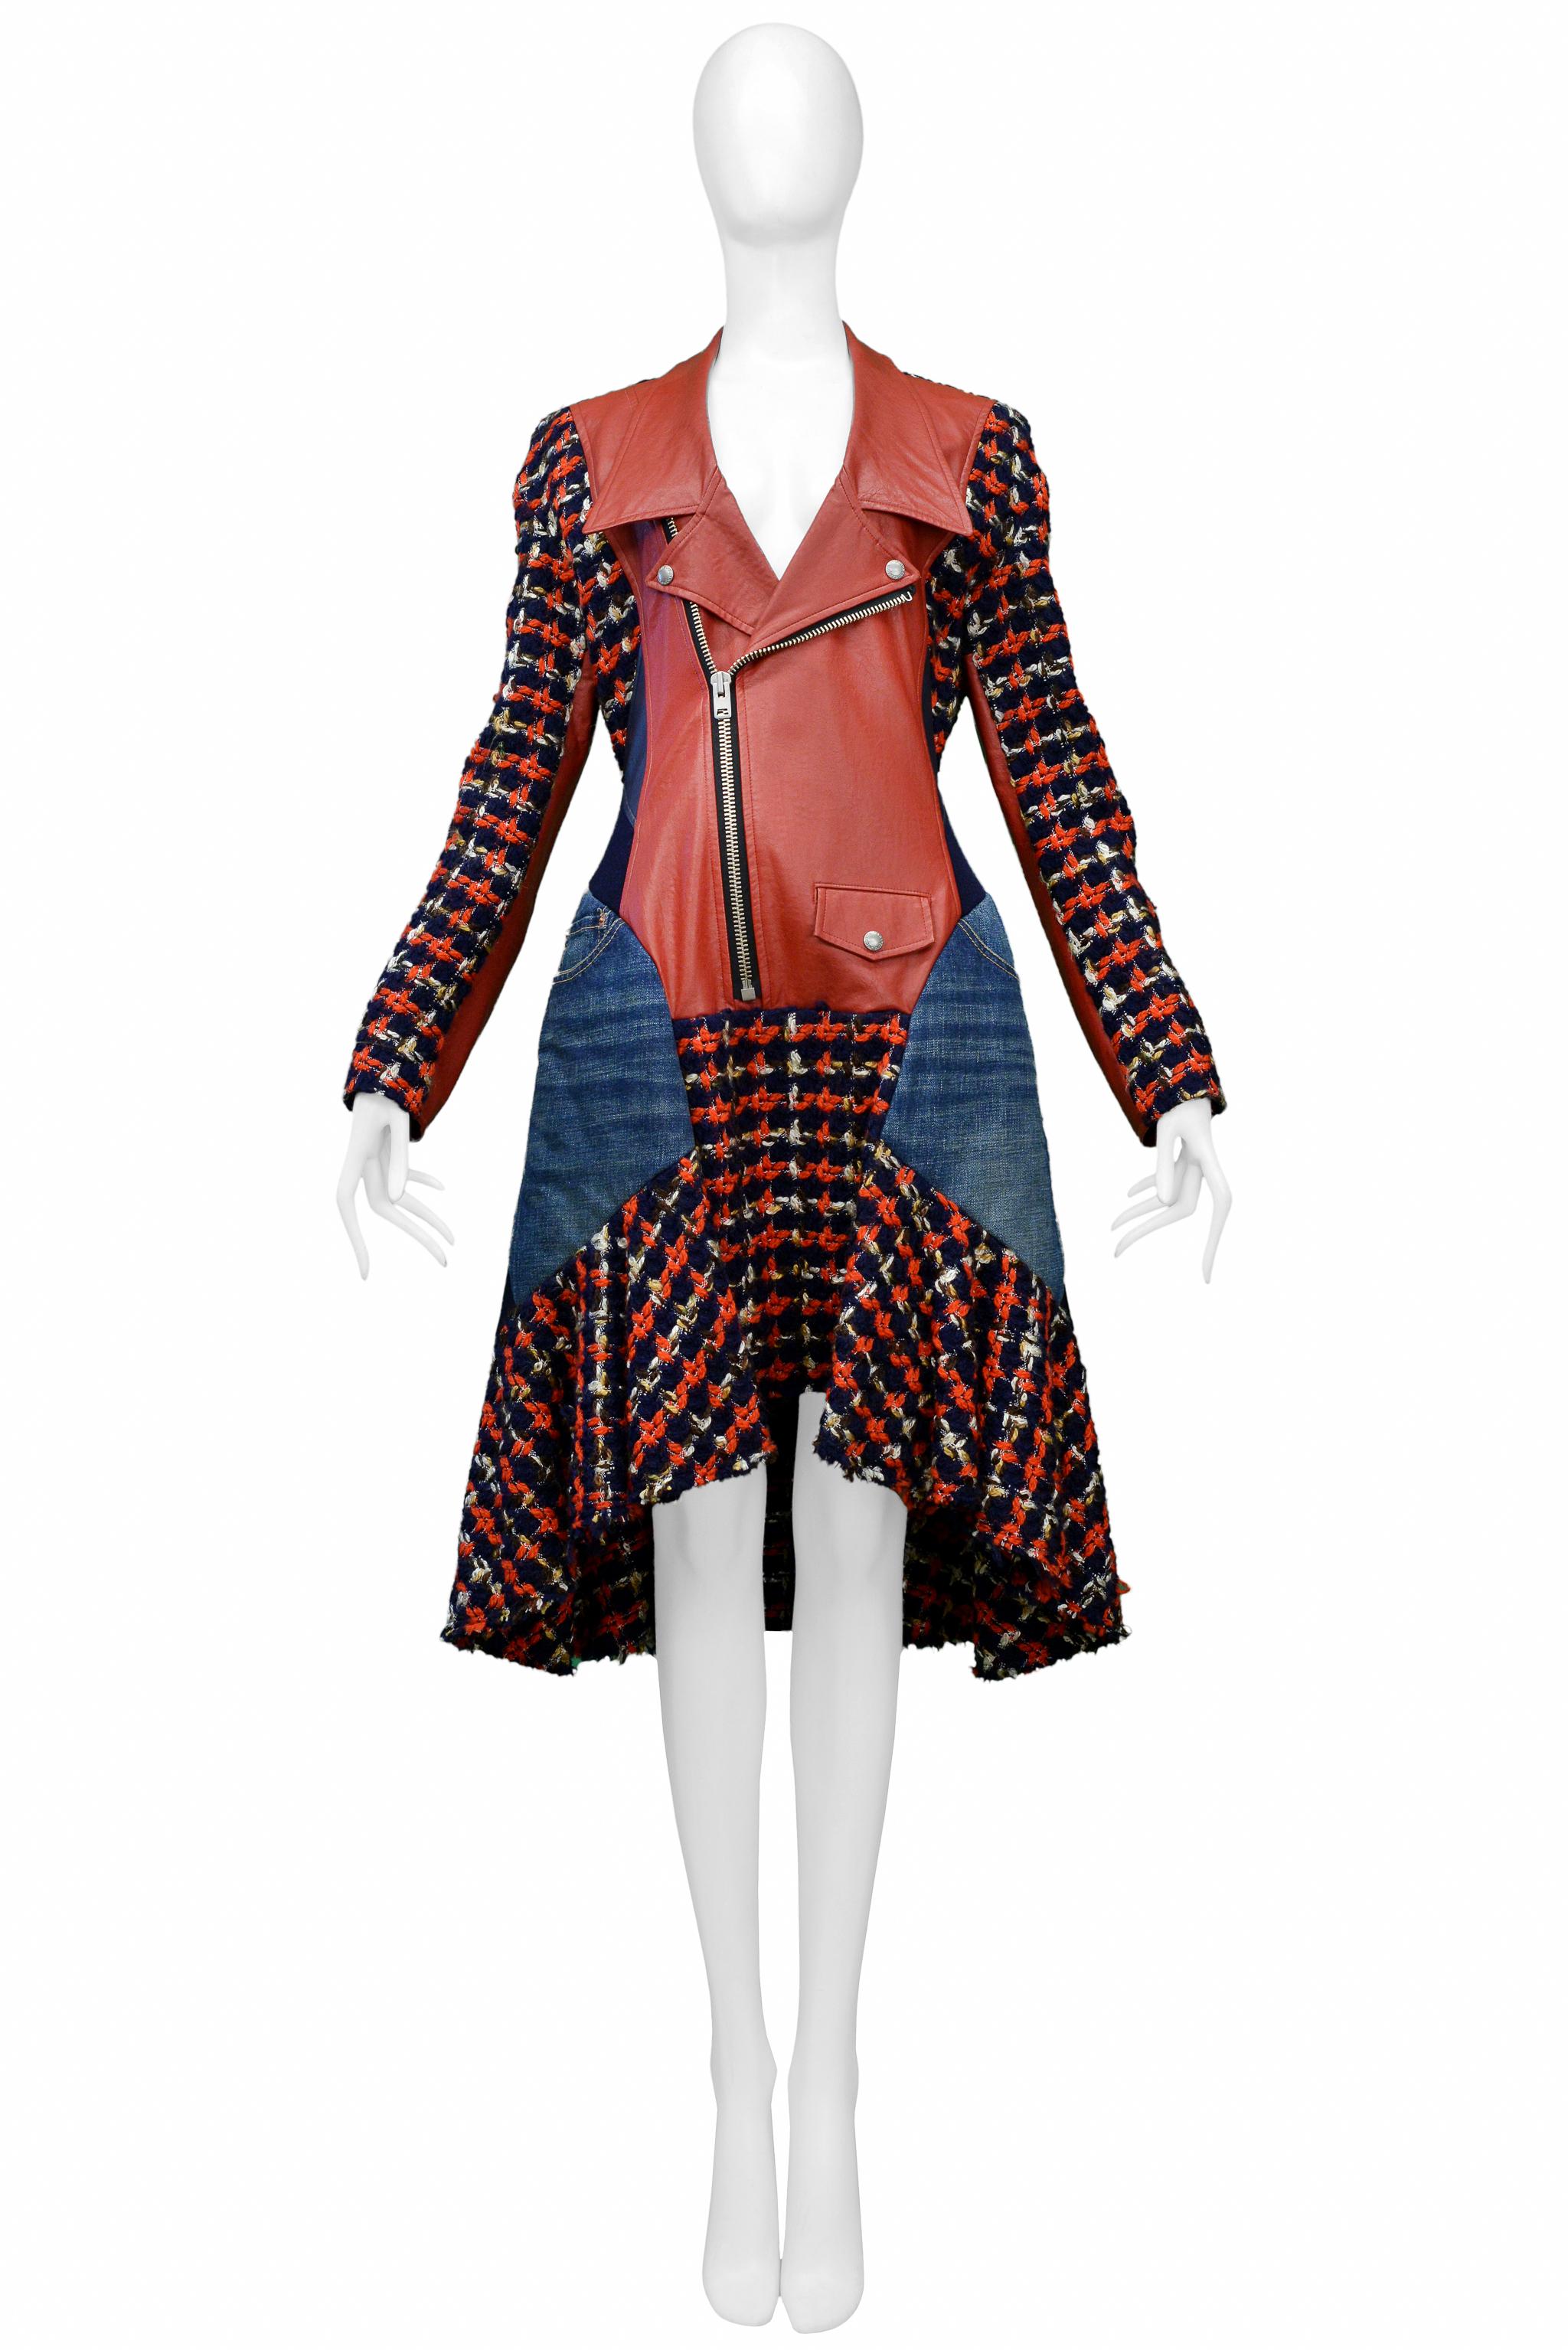 Resurrection Vintage a le plaisir de vous proposer une robe vintage Junya Watanabe pour Comme des Garcons, de couleur rouge, avec une boucle écossaise et des empiècements en denim bleu. 

Junya Watanabe
Taille : Large
Laine, acrylique, coton, cuir